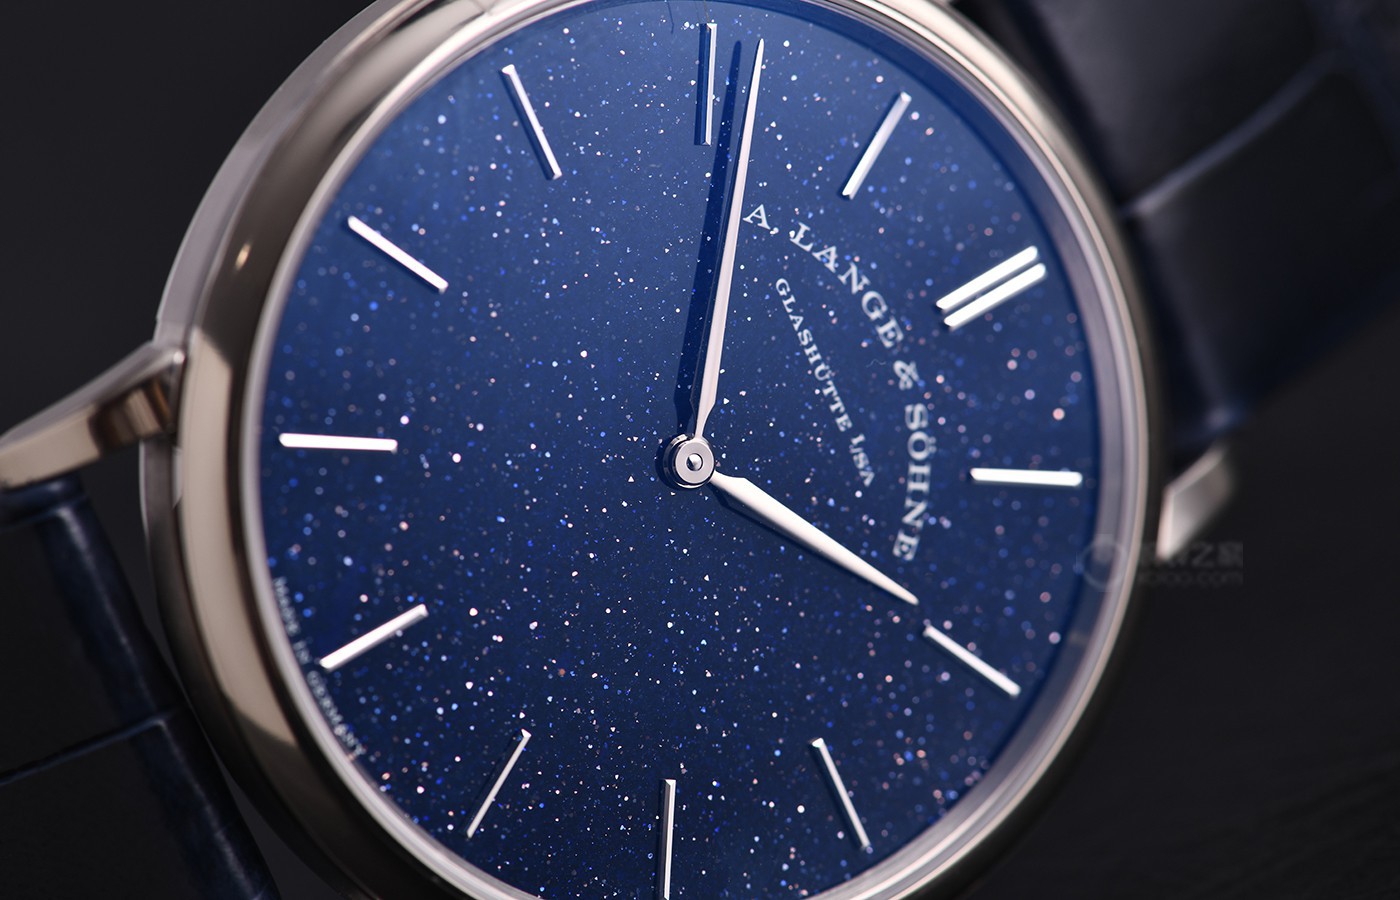 如果不能陪你领略到浩瀚无垠星空 那可以送你一枚朗格Saxonia Thin腕表吧